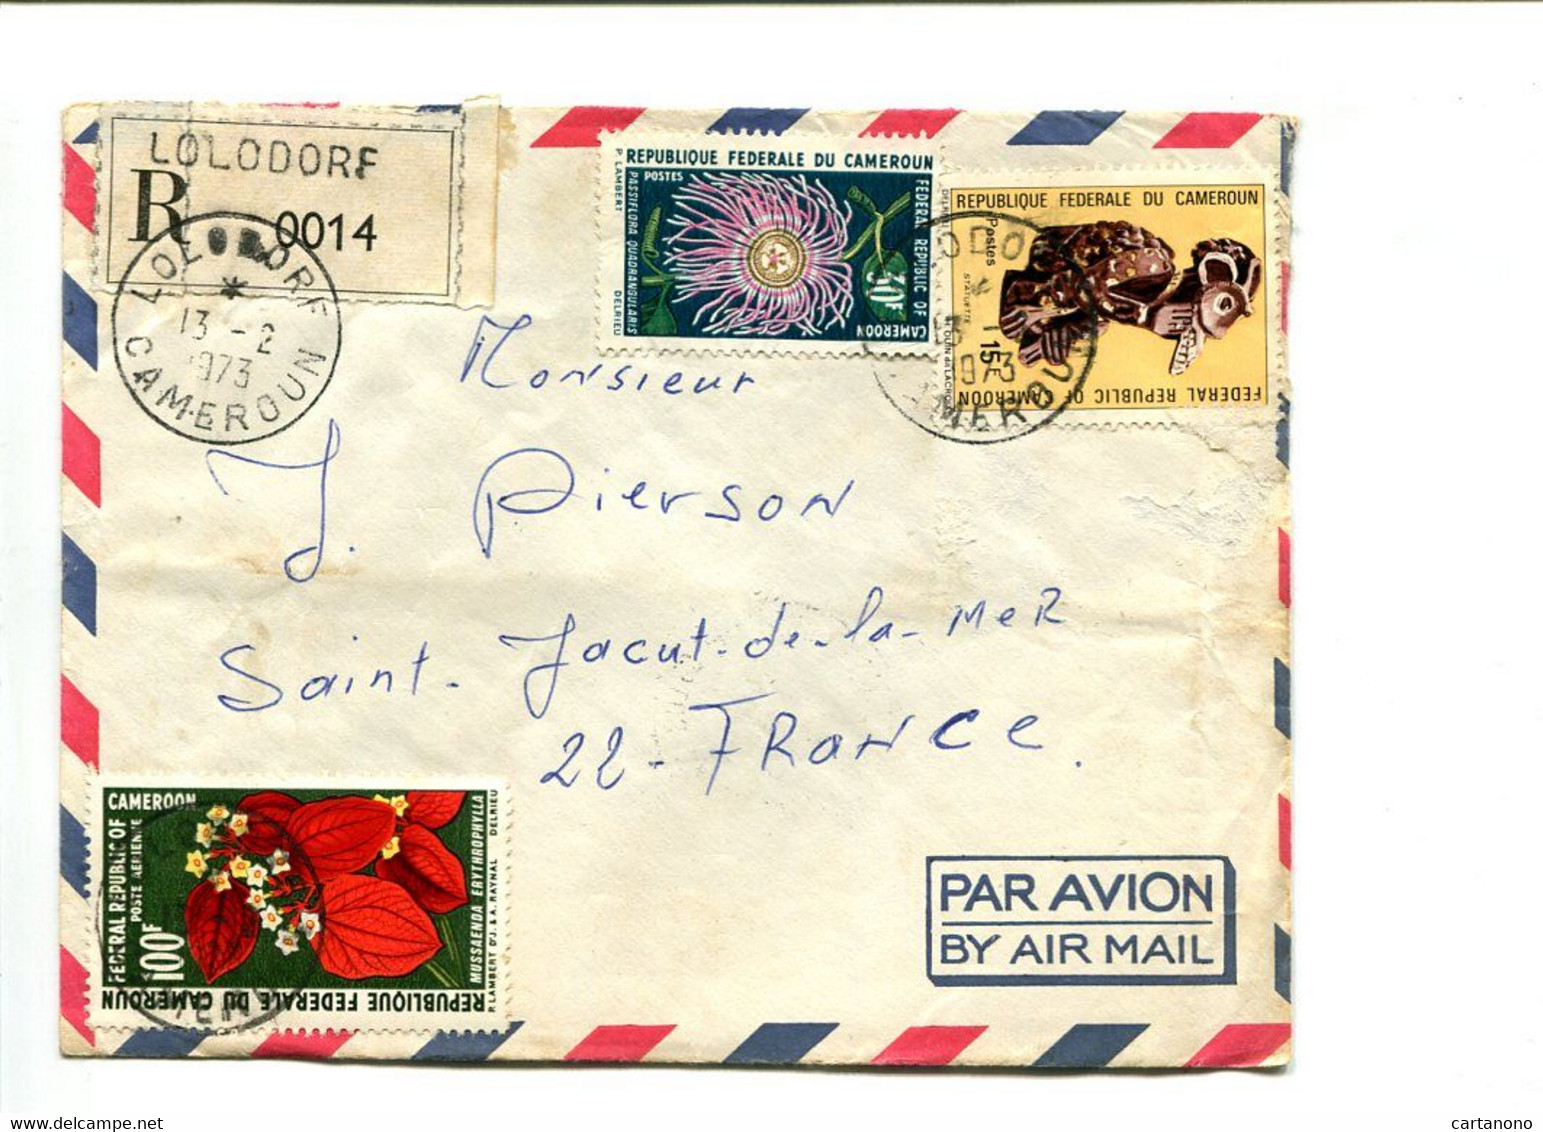 CAMEROUN Lolodore 1973 -  Affranchissement Sur Lettre Recommandée Par Avion - Fleurs - Camerún (1960-...)